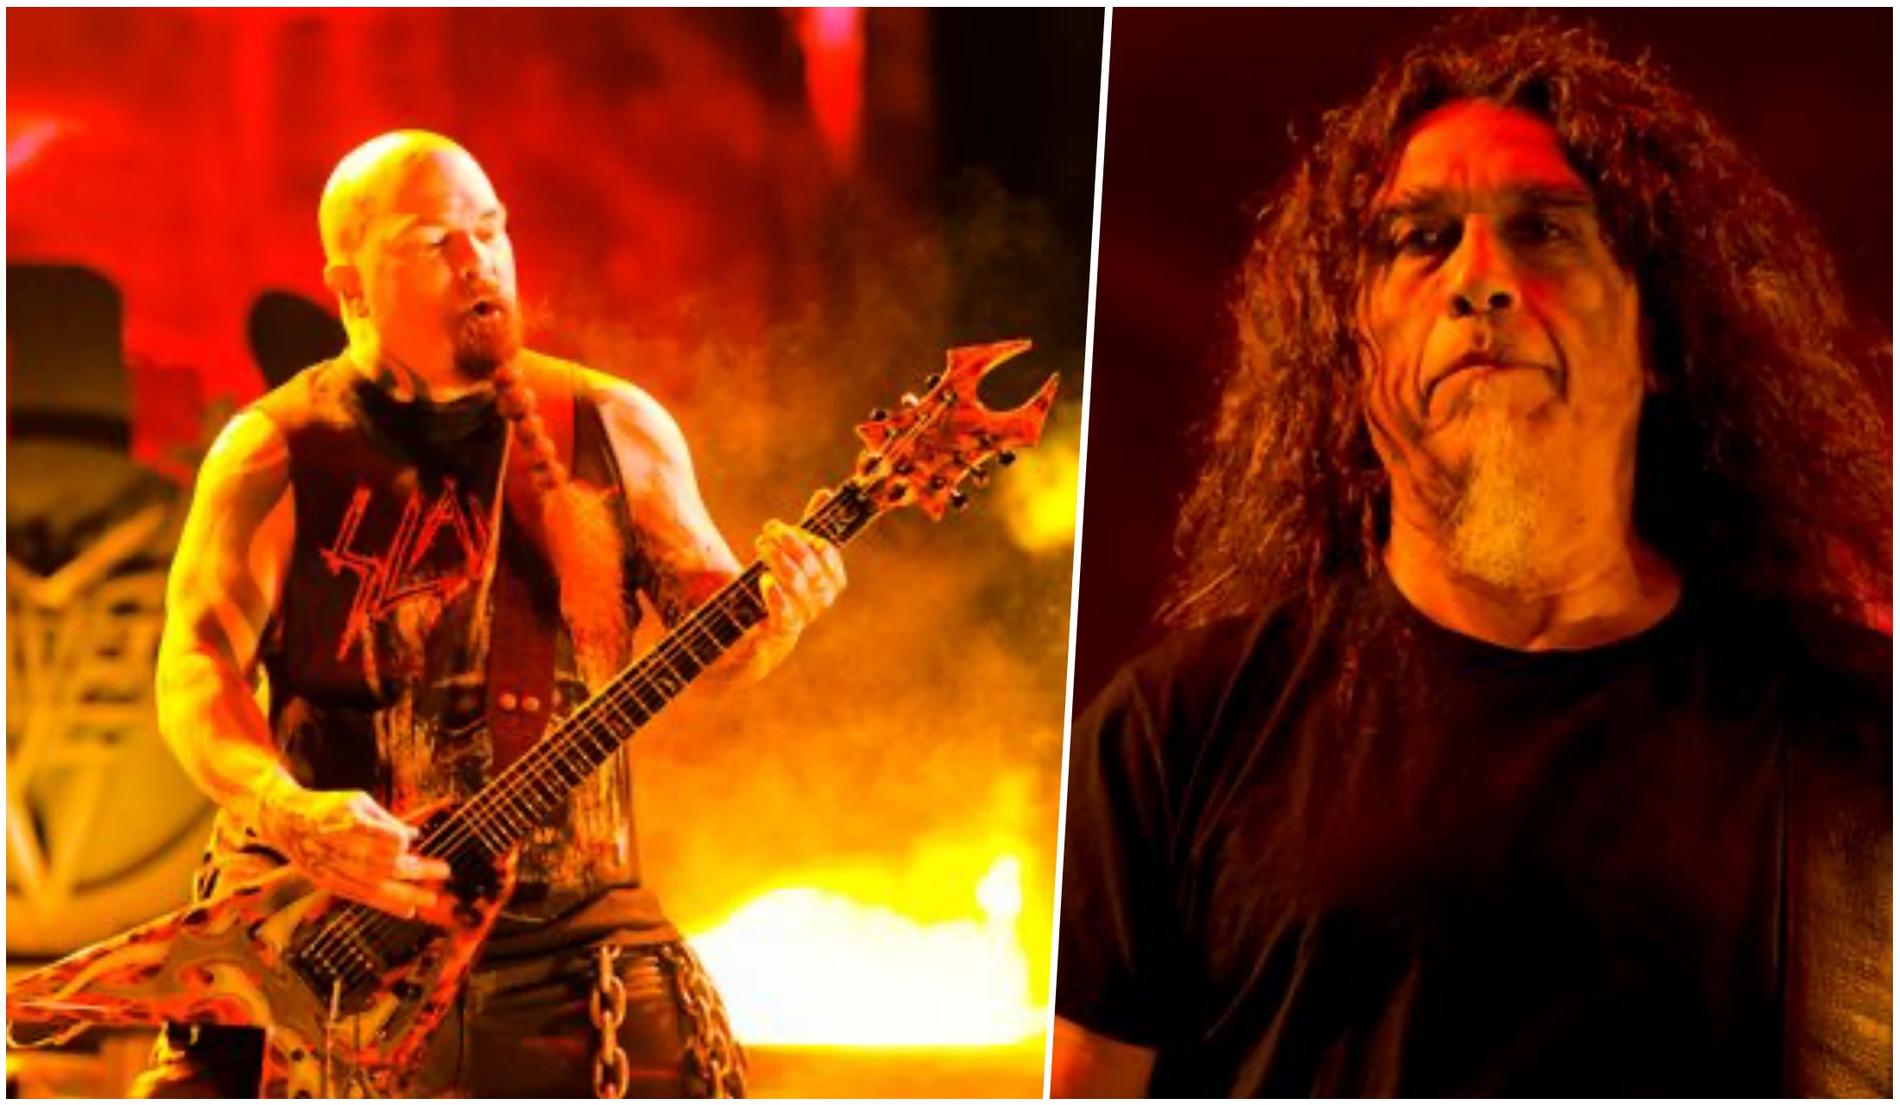 I höst kommer det ikoniska thrash metal-bandet Slayer (här Kerry King och Tom Araya) att återförenas för ett fåtal festivalspelningar i hemlandet USA, drygt fyra år efter sin avskedsturné.